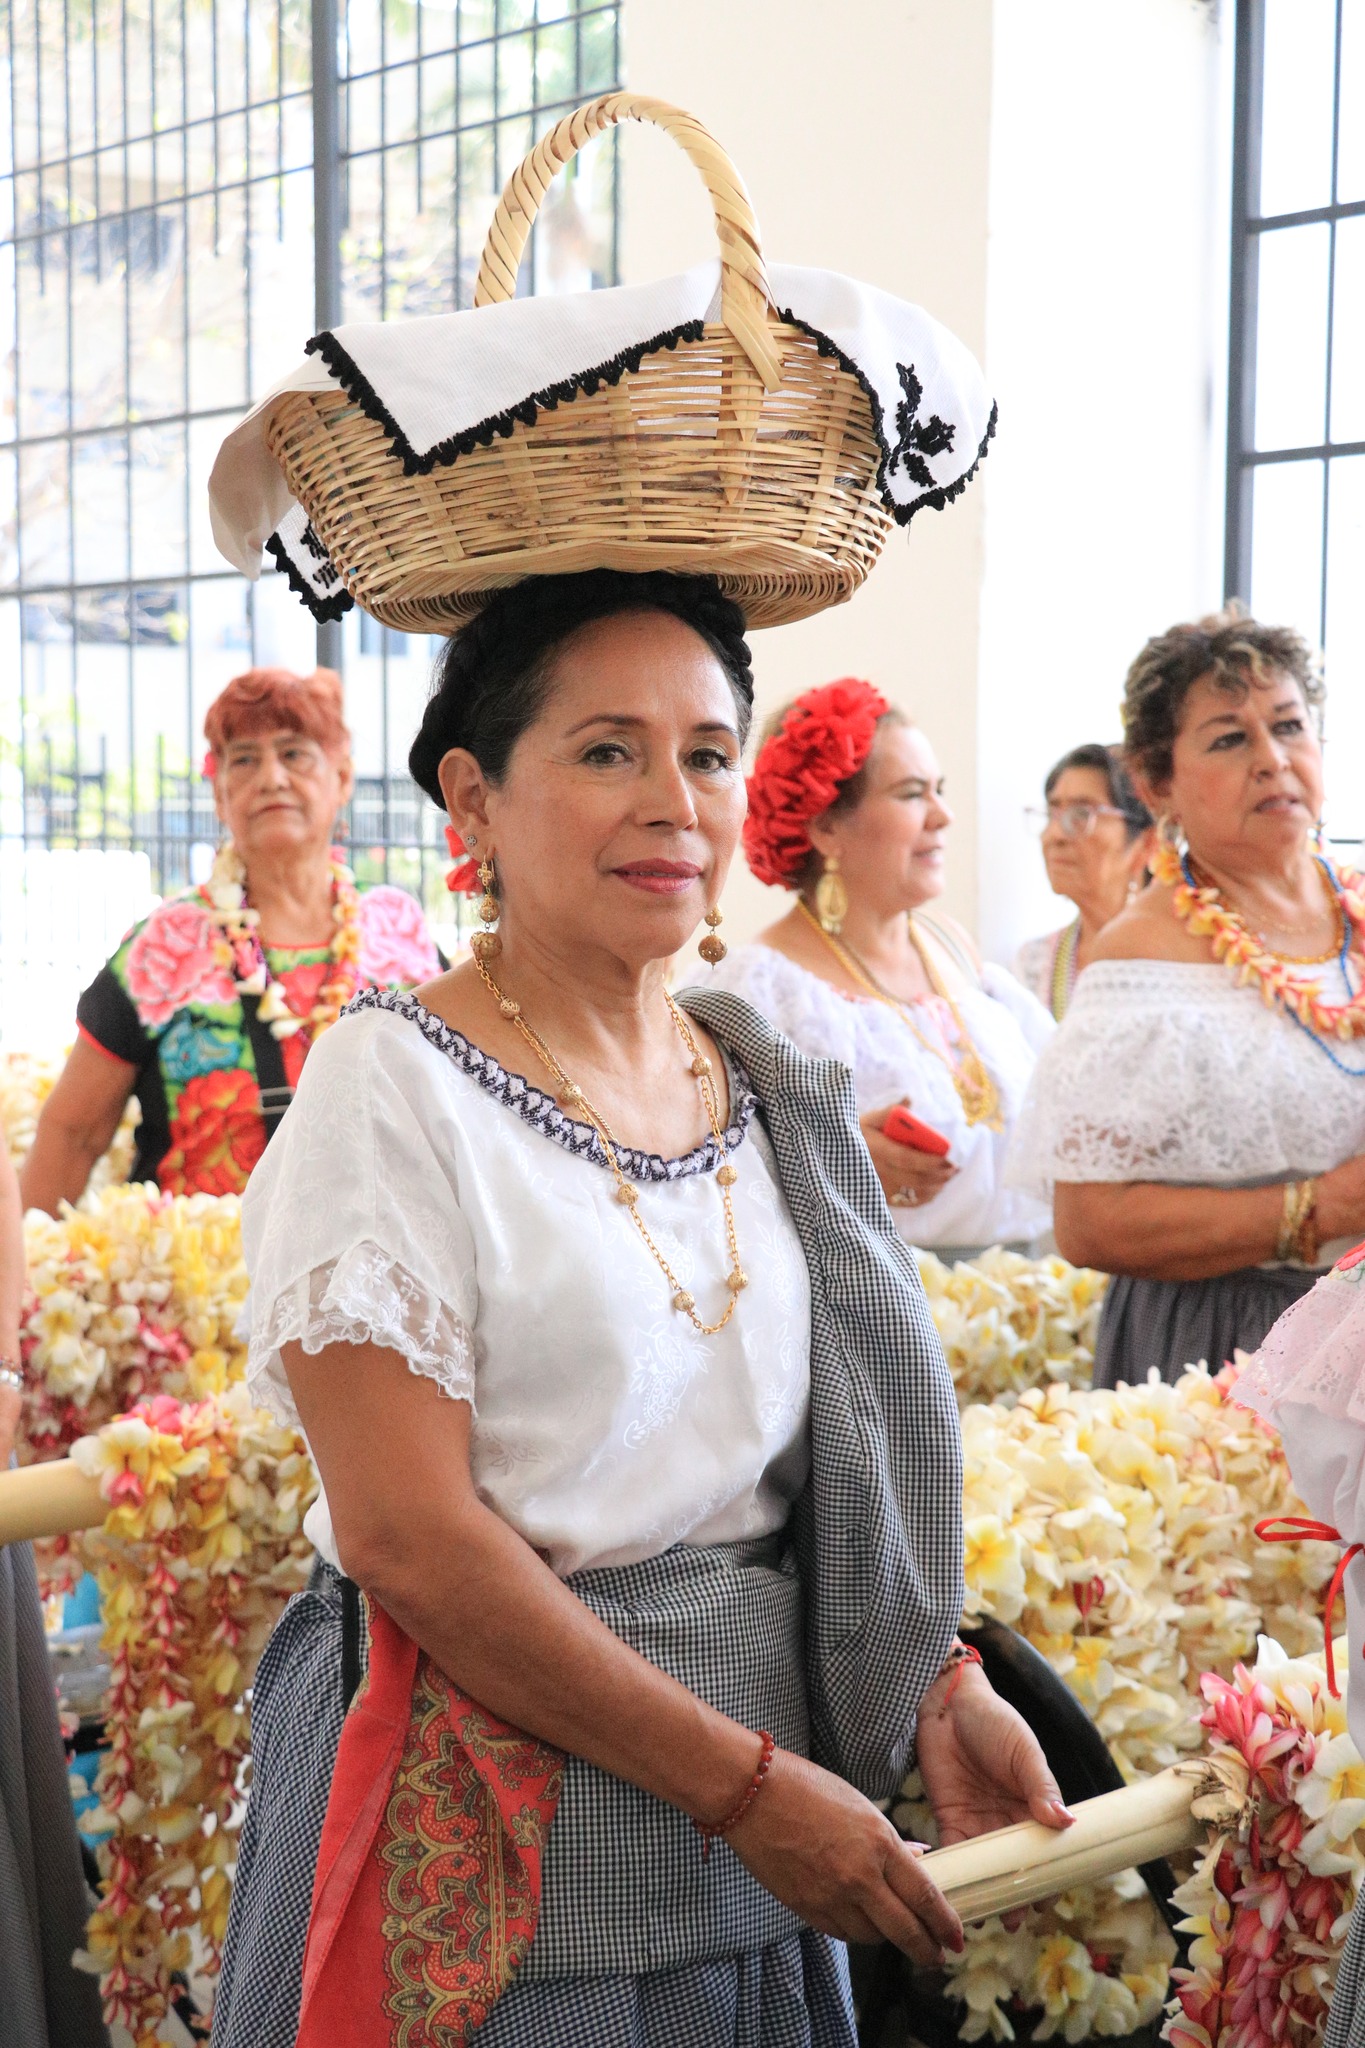 Ensarta de flores, pozol y mucha alegría, es como se vivió la festividad de San Marcos en Tuxtla Gutiérrez!